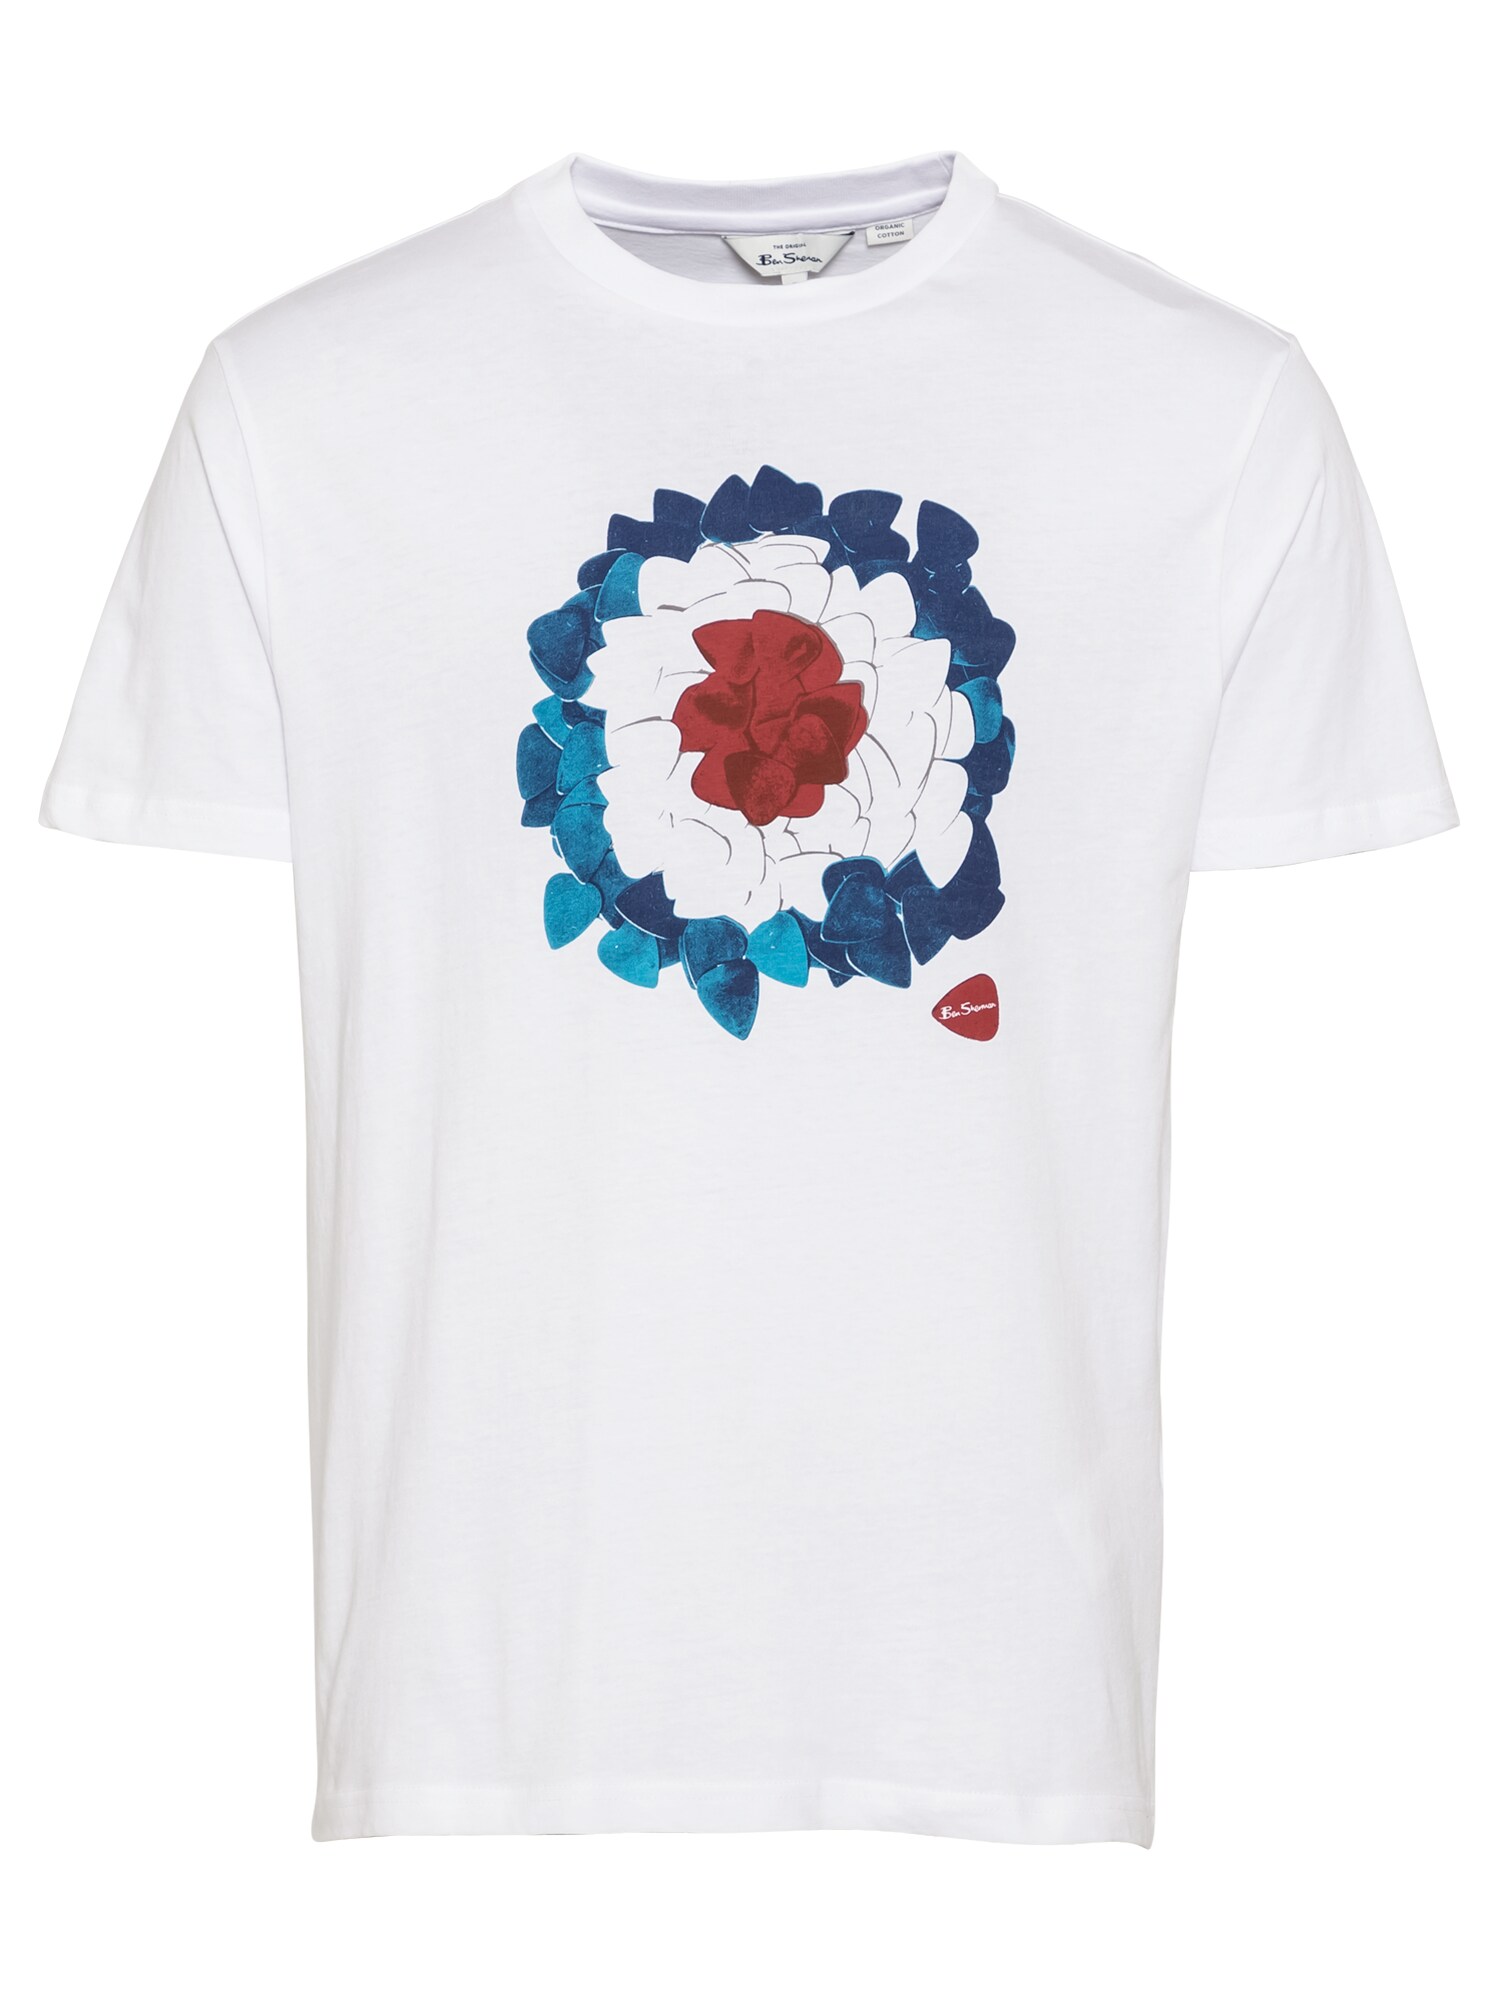 Ben Sherman Marškinėliai 'PLECTRUM'  balta / mėlyna / pastelinė raudona / turkio spalva